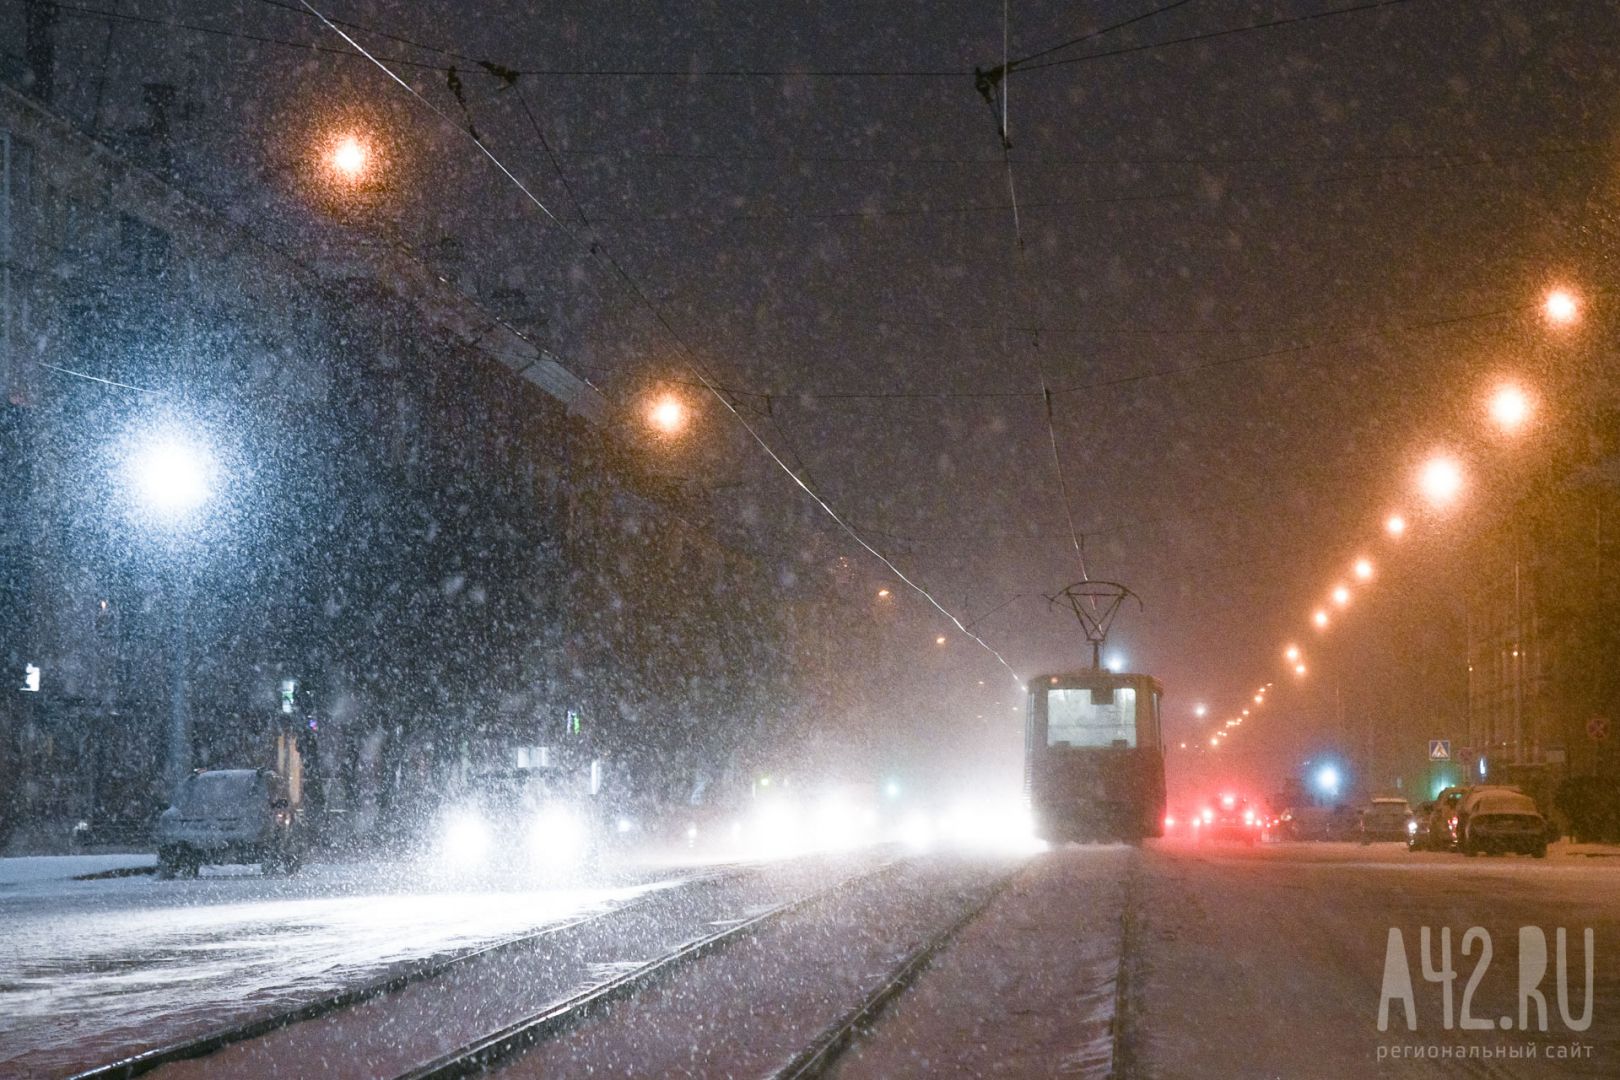 До -20 и снег: синоптики дали прогноз погоды на выходные в Кузбассе